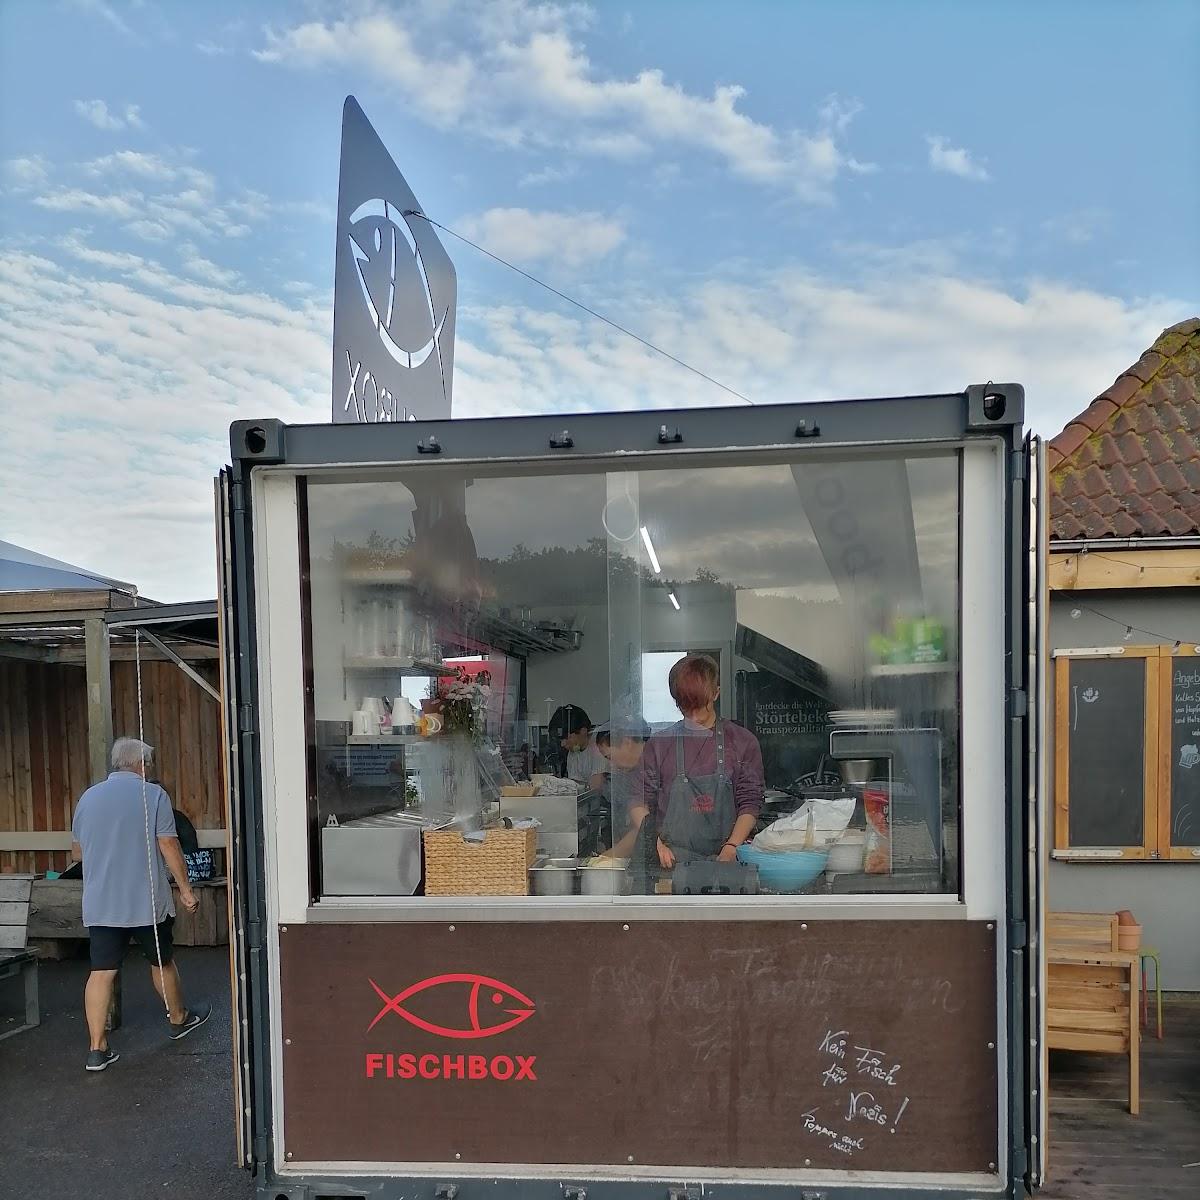 Restaurant "Fischbox" in Altefähr